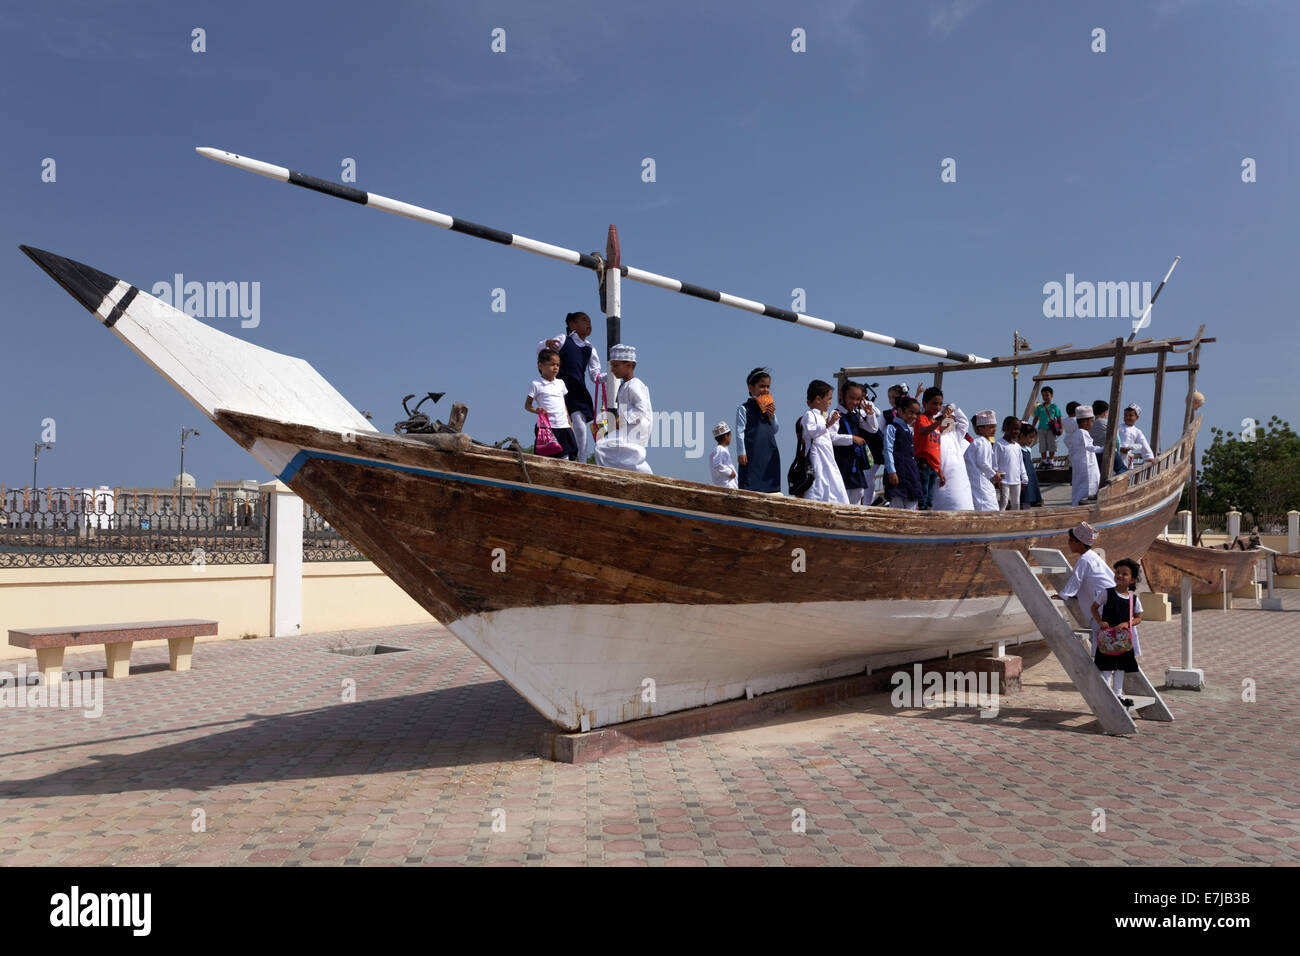 Enfants jouant sur un dhow-navire dans le boutre, Musée Sur Ivry, province, Sultanat d'Oman, dans la péninsule arabique Banque D'Images